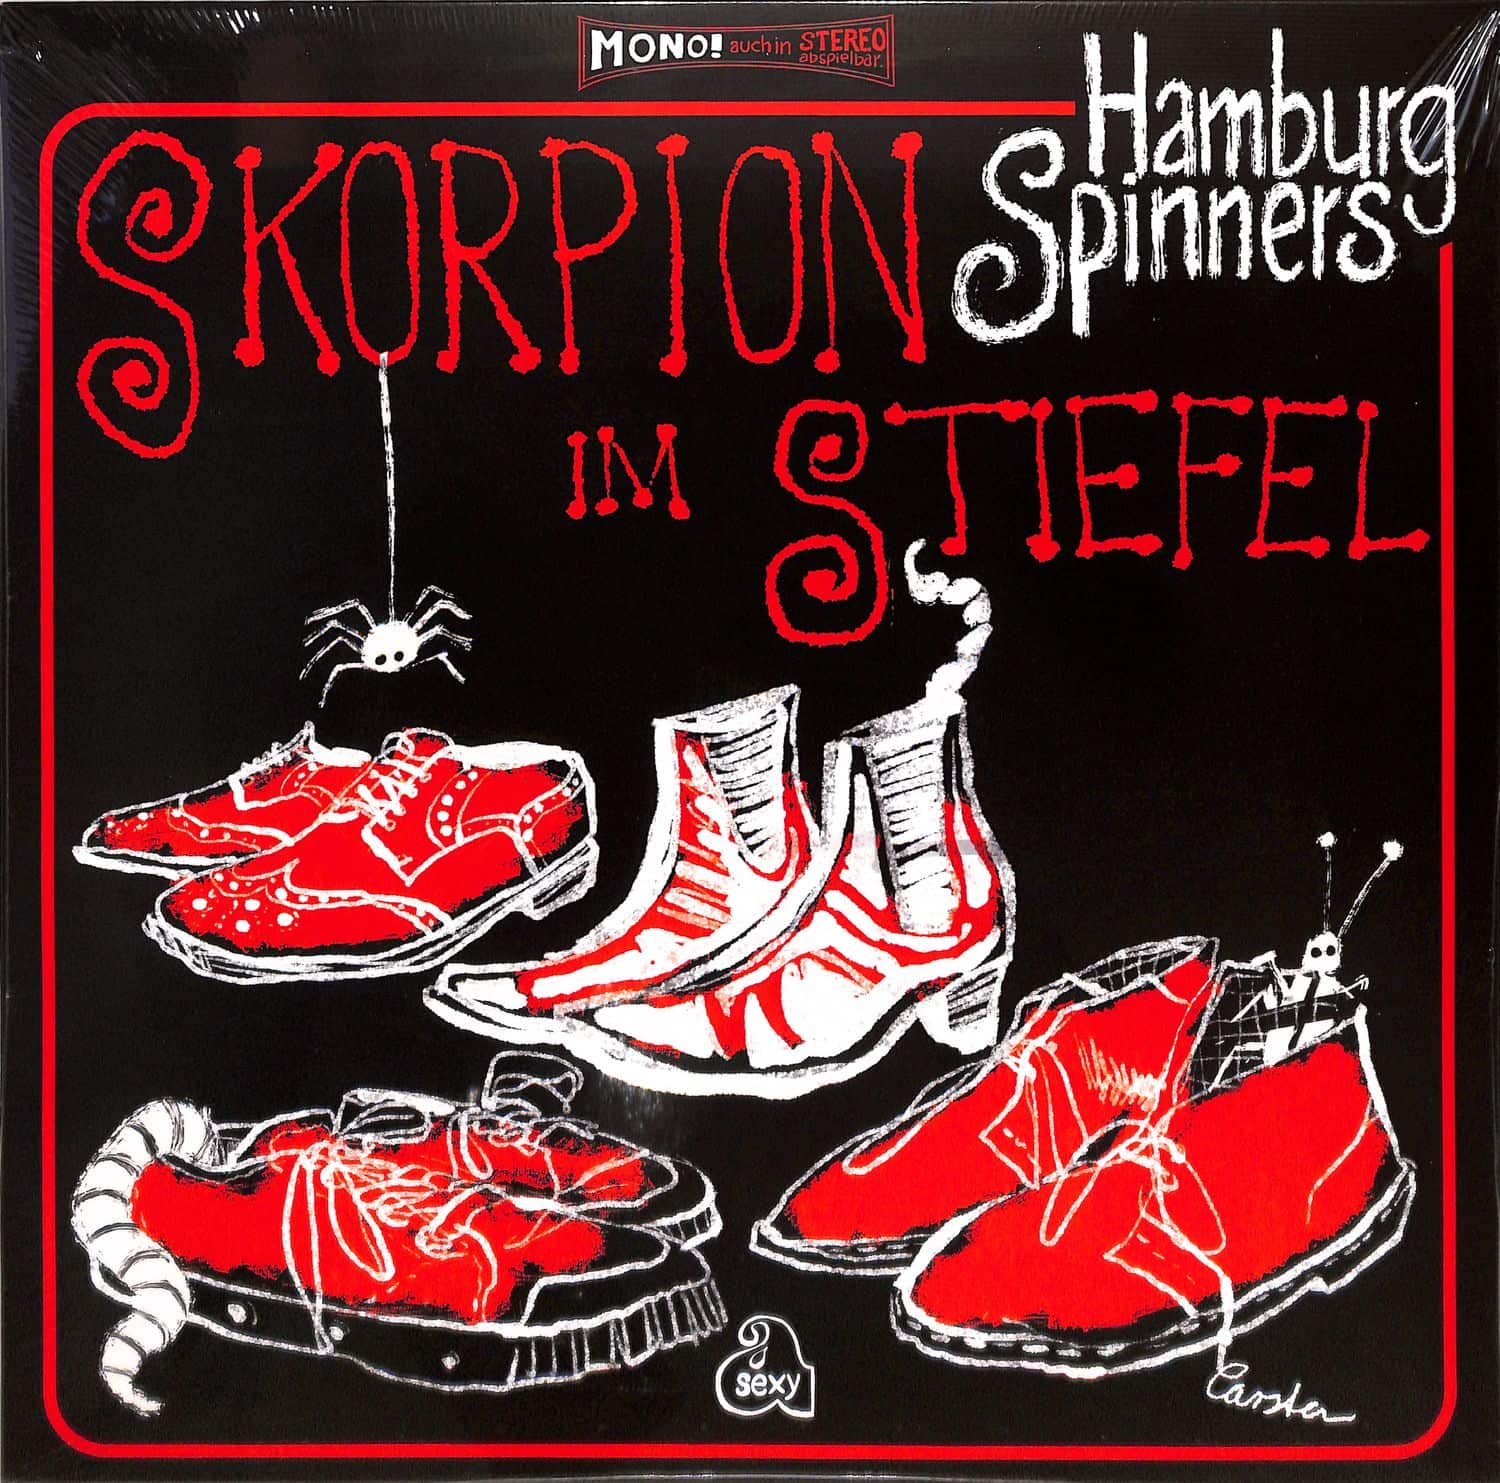 Hamburg Spinners - SKORPION IM STIEFEL 